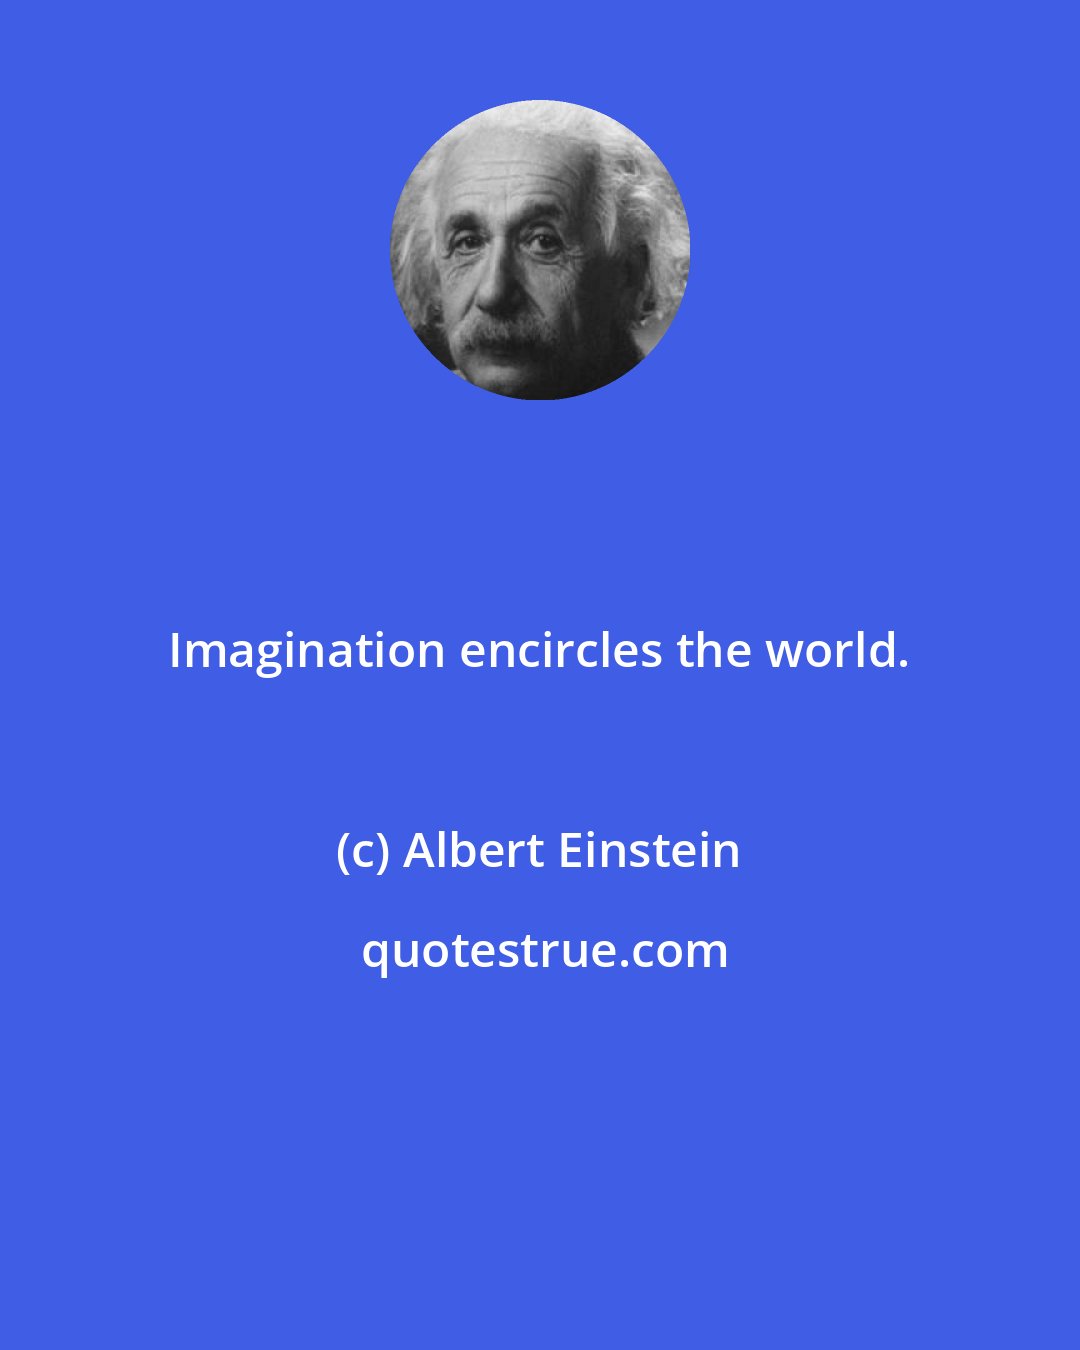 Albert Einstein: Imagination encircles the world.